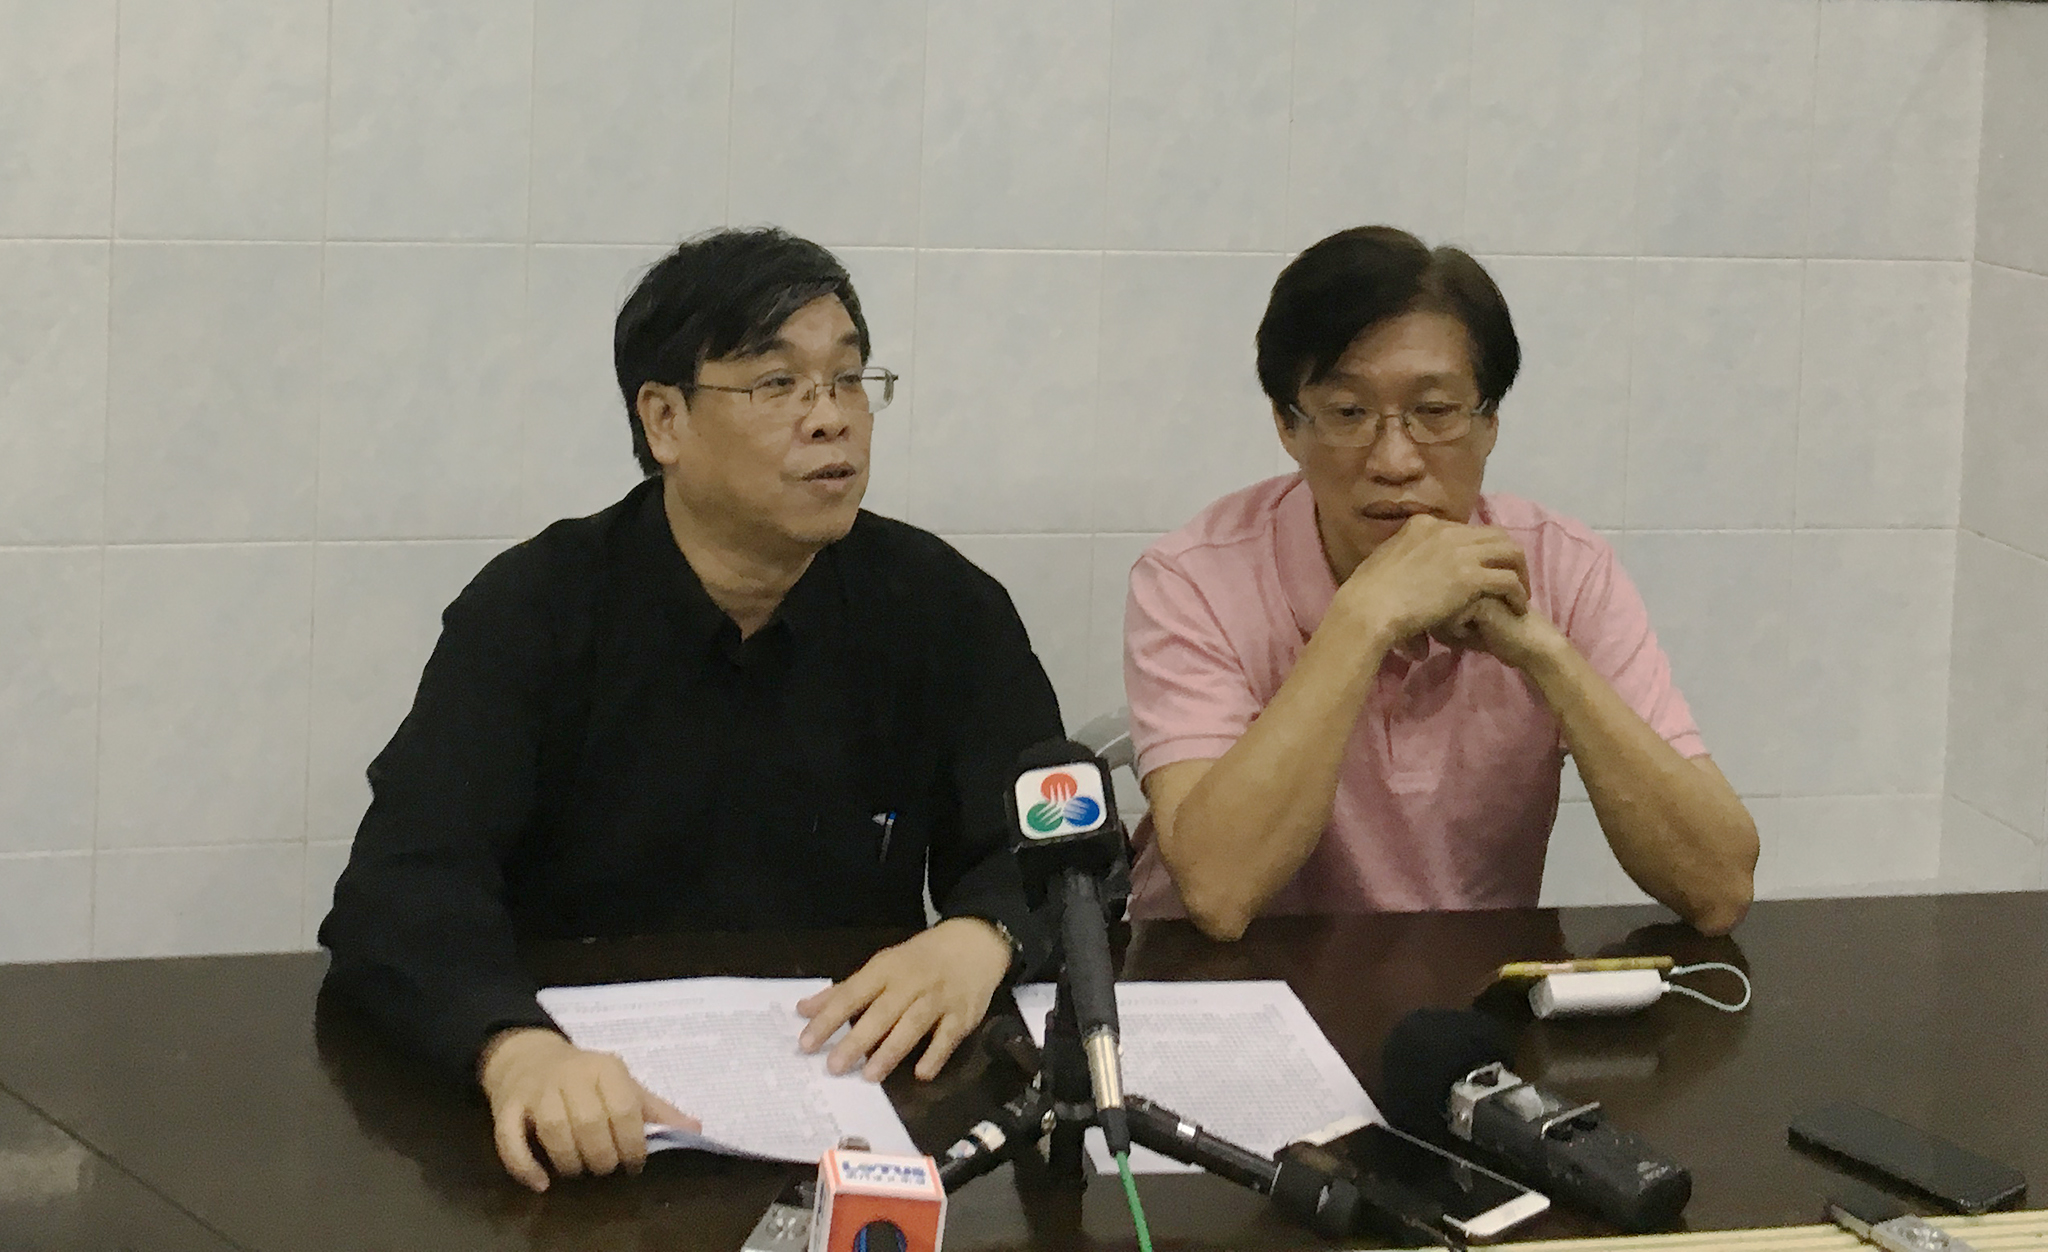 Novos aterros | Ng Kuok Cheong e Au Kam San entregam projecto de lei